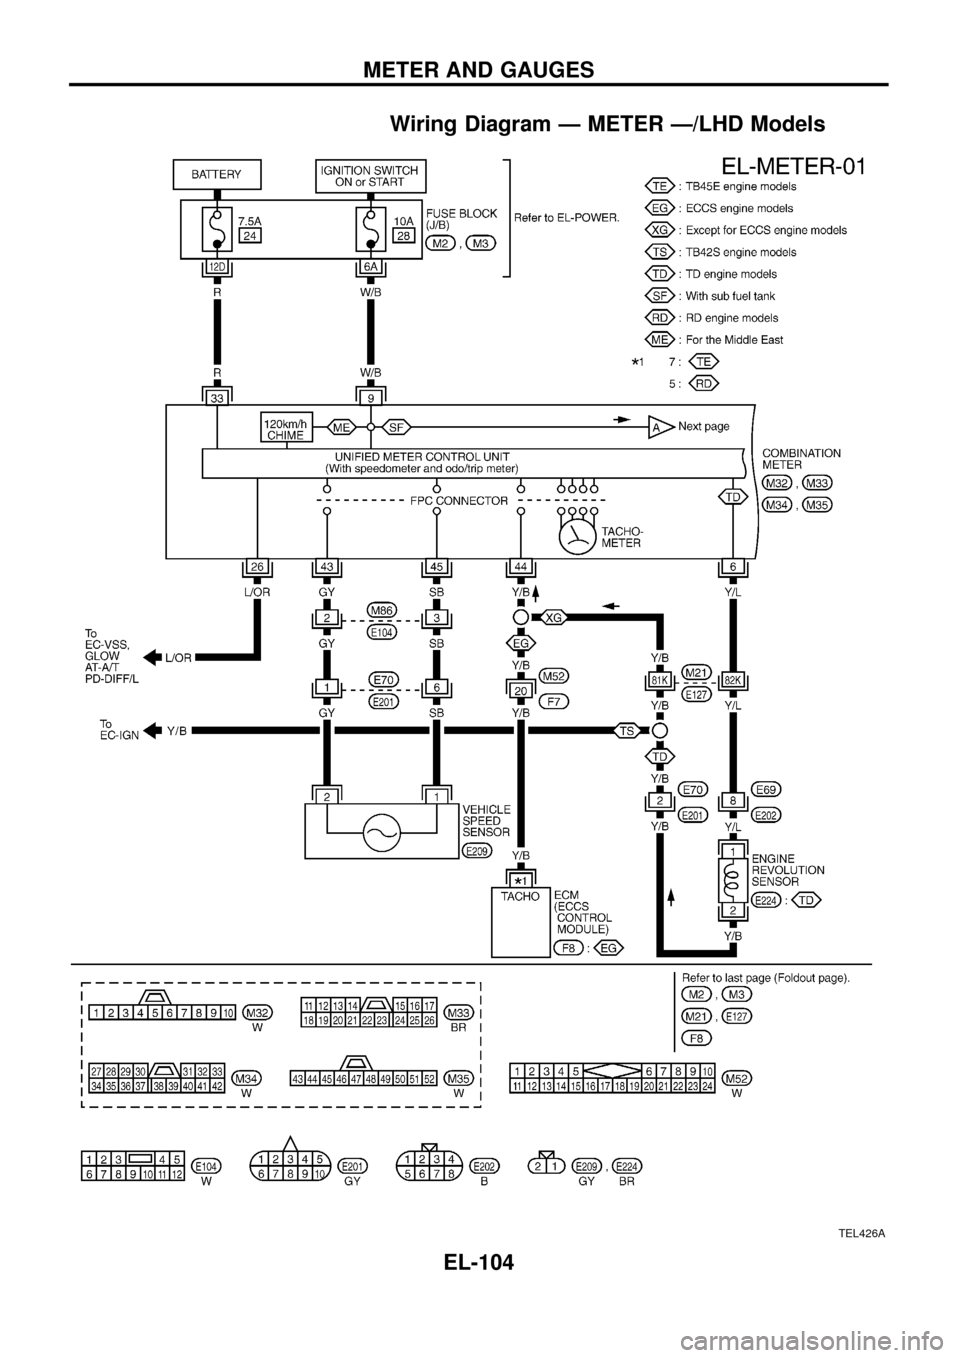 NISSAN PATROL 1998 Y61 / 5.G Electrical System Service Manual Wiring Diagram Ð METER Ð/LHD Models
TEL426A
METER AND GAUGES
EL-104 